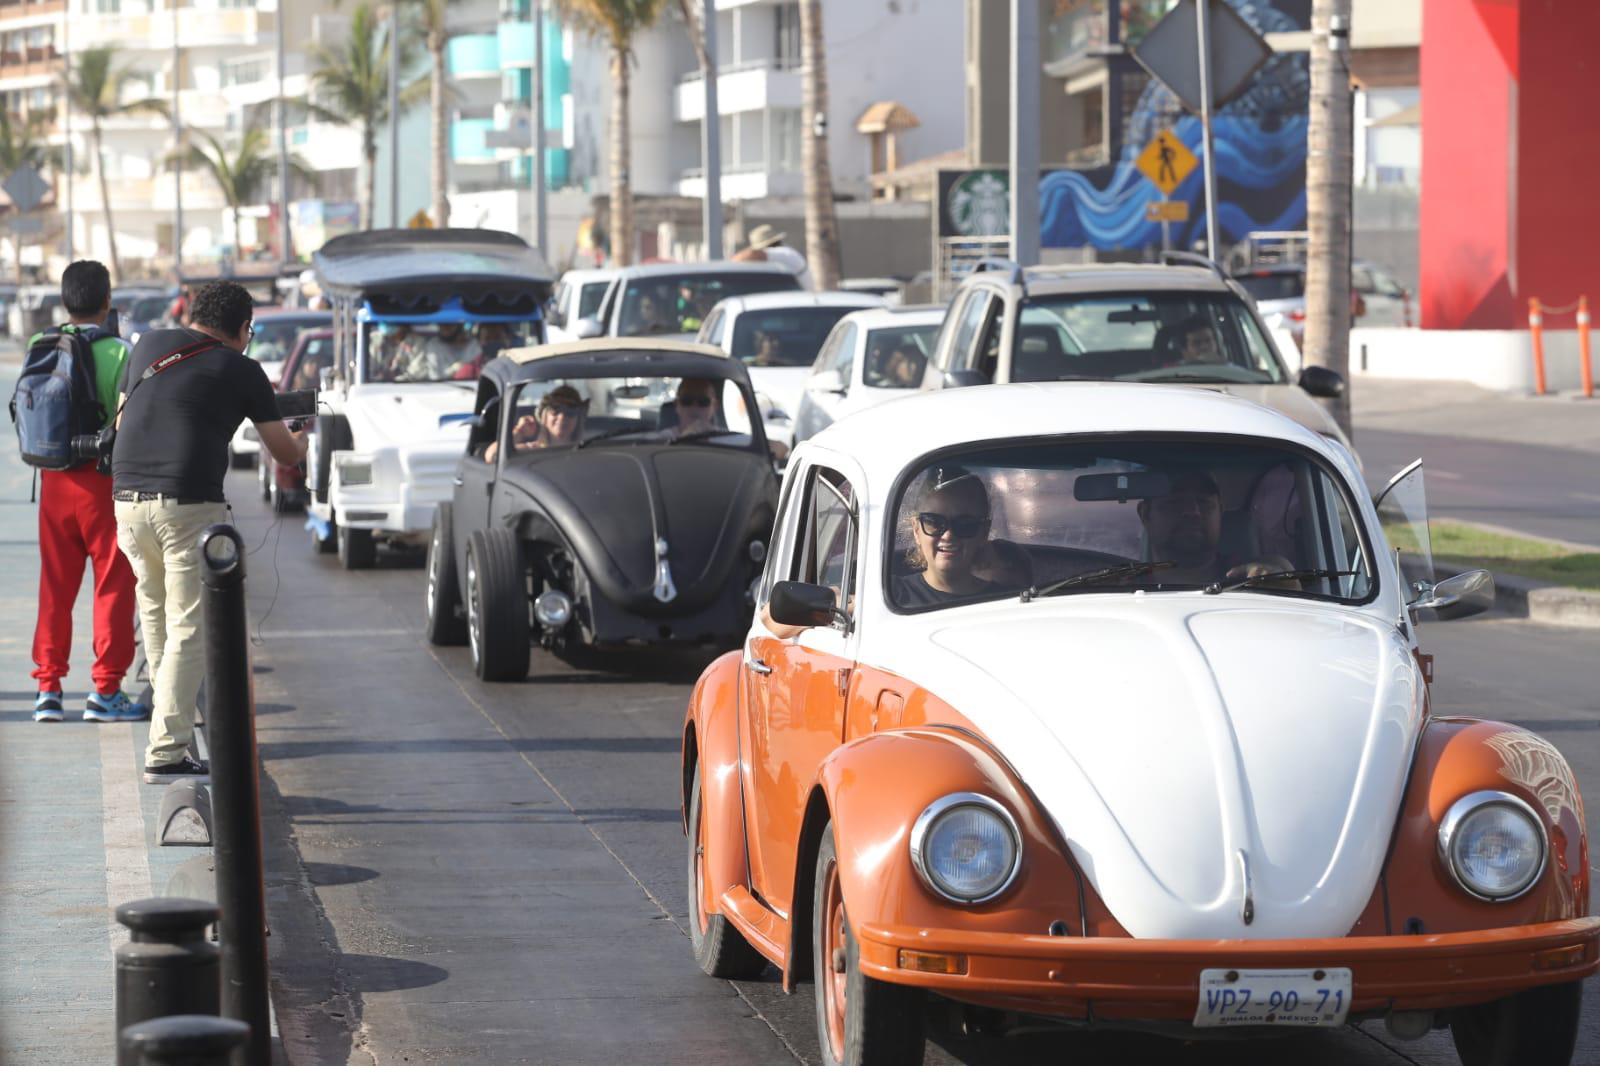 $!Cientos de automóviles Volkswagen desfilan en Mazatlán